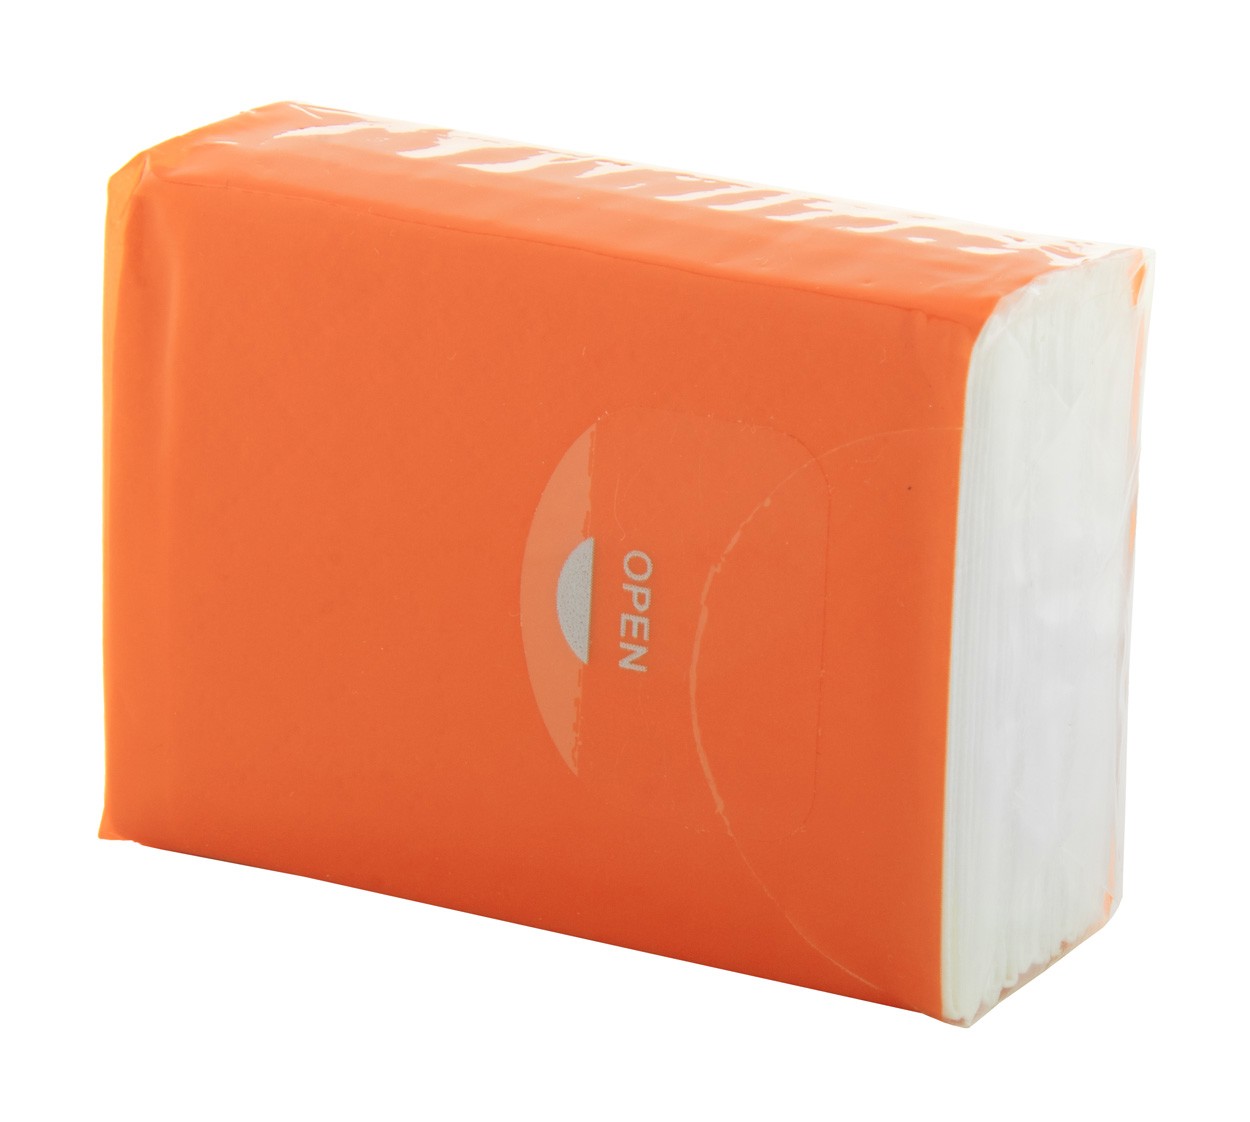 Tissues Custom - Orange